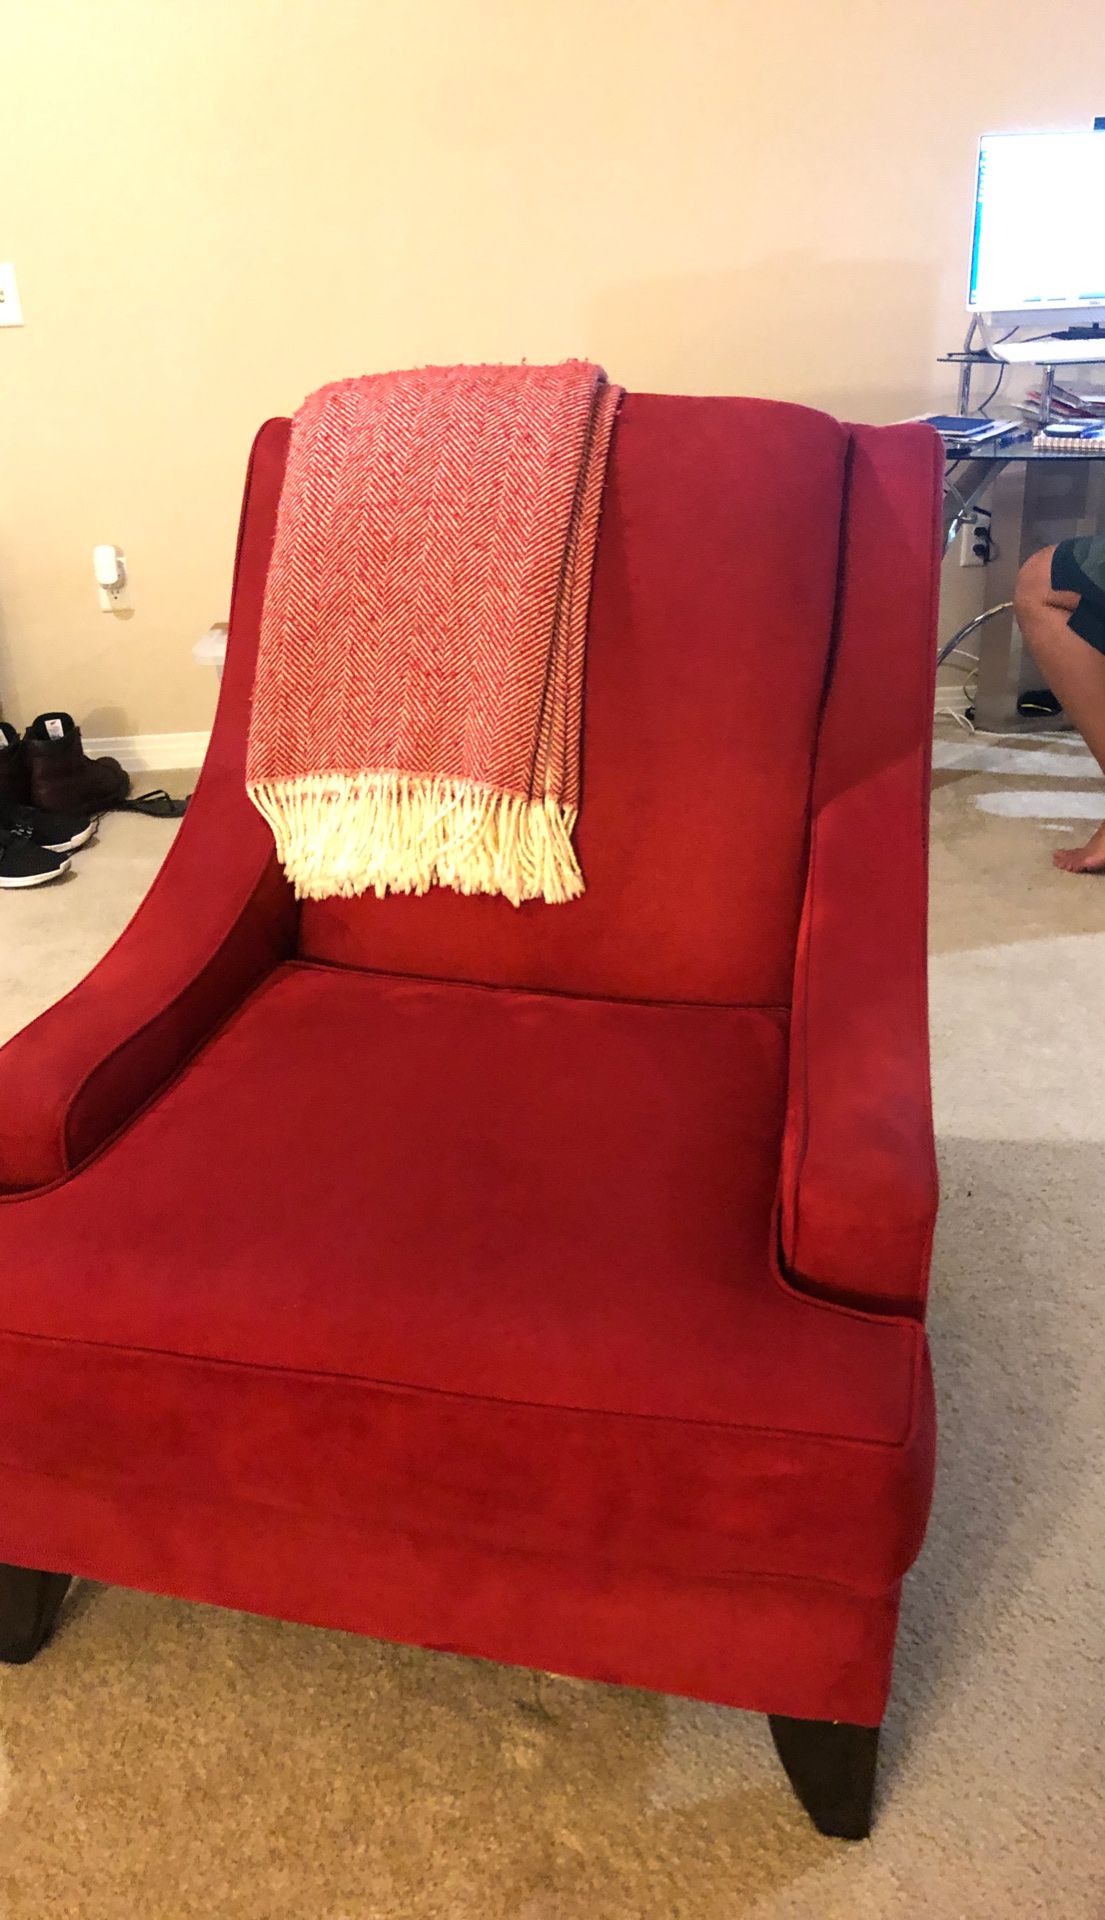 Red Santa chair